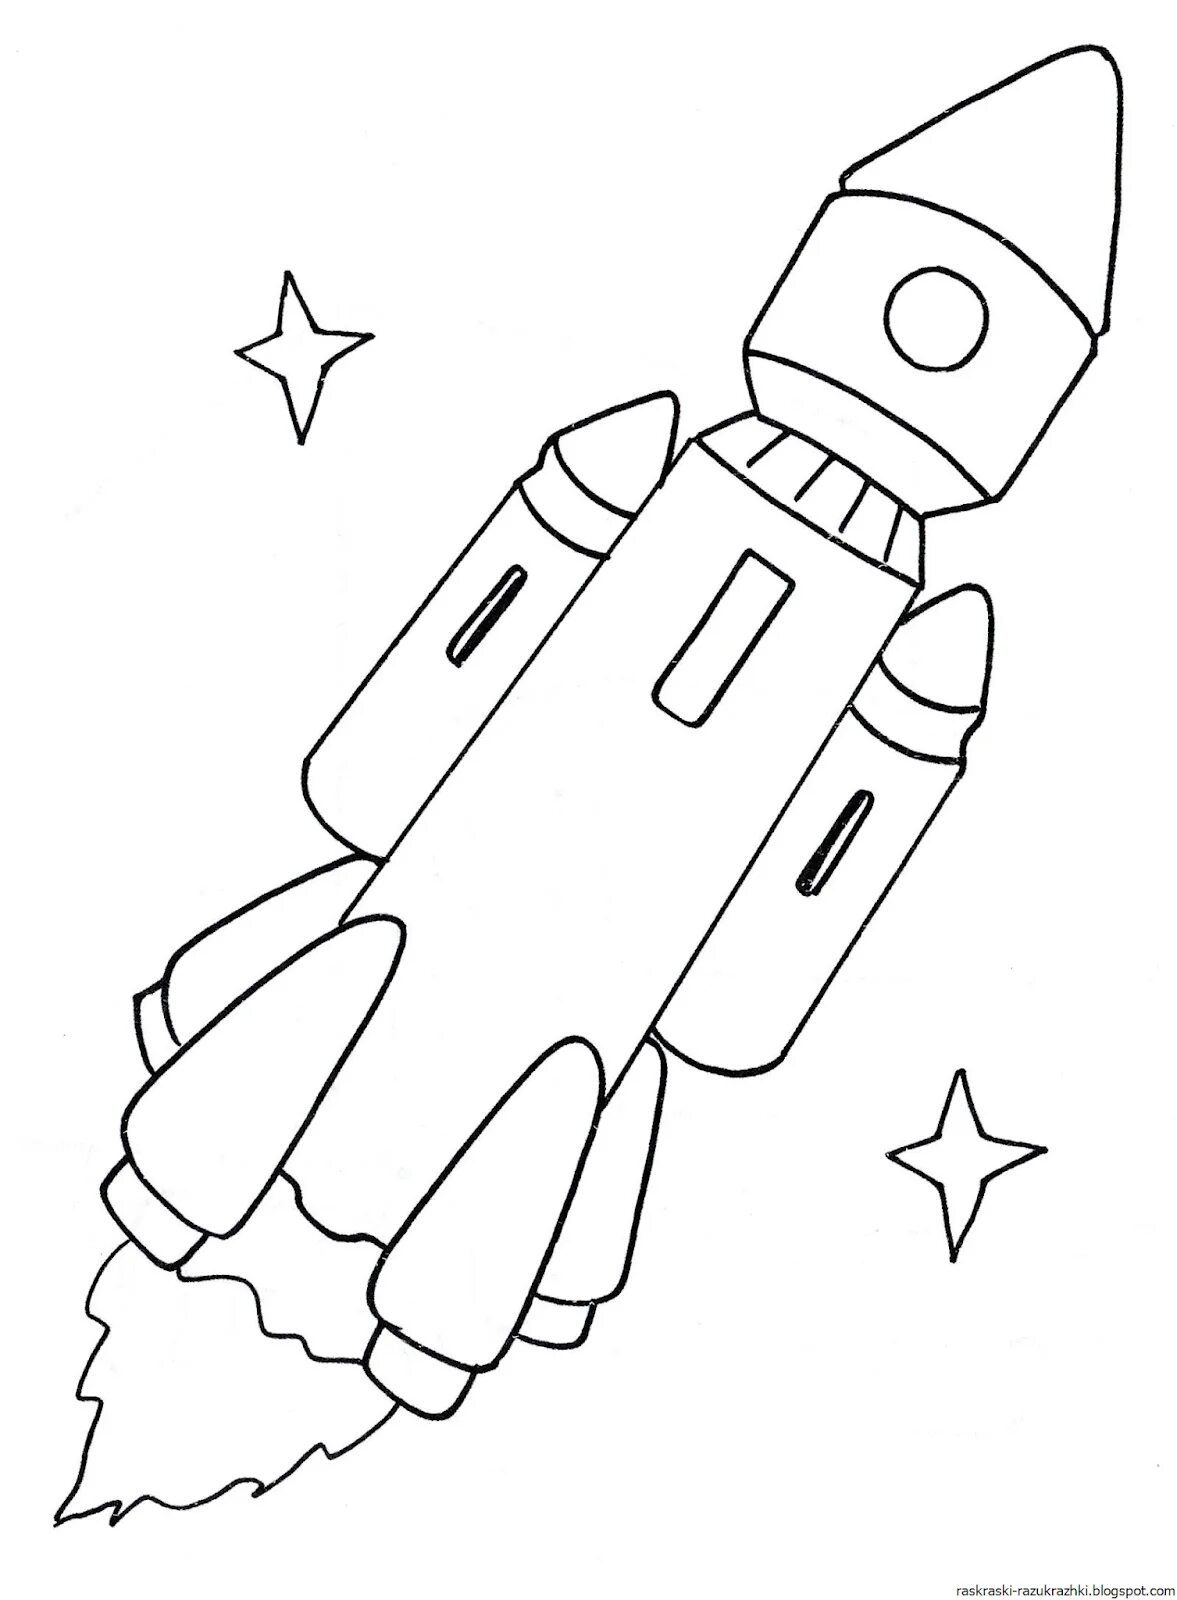 Ракета раскраска для детей 5 лет. Ракета раскраска. Ракета раскраска для детей. Космическая ракета раскраска. Космический корабль раскраска.